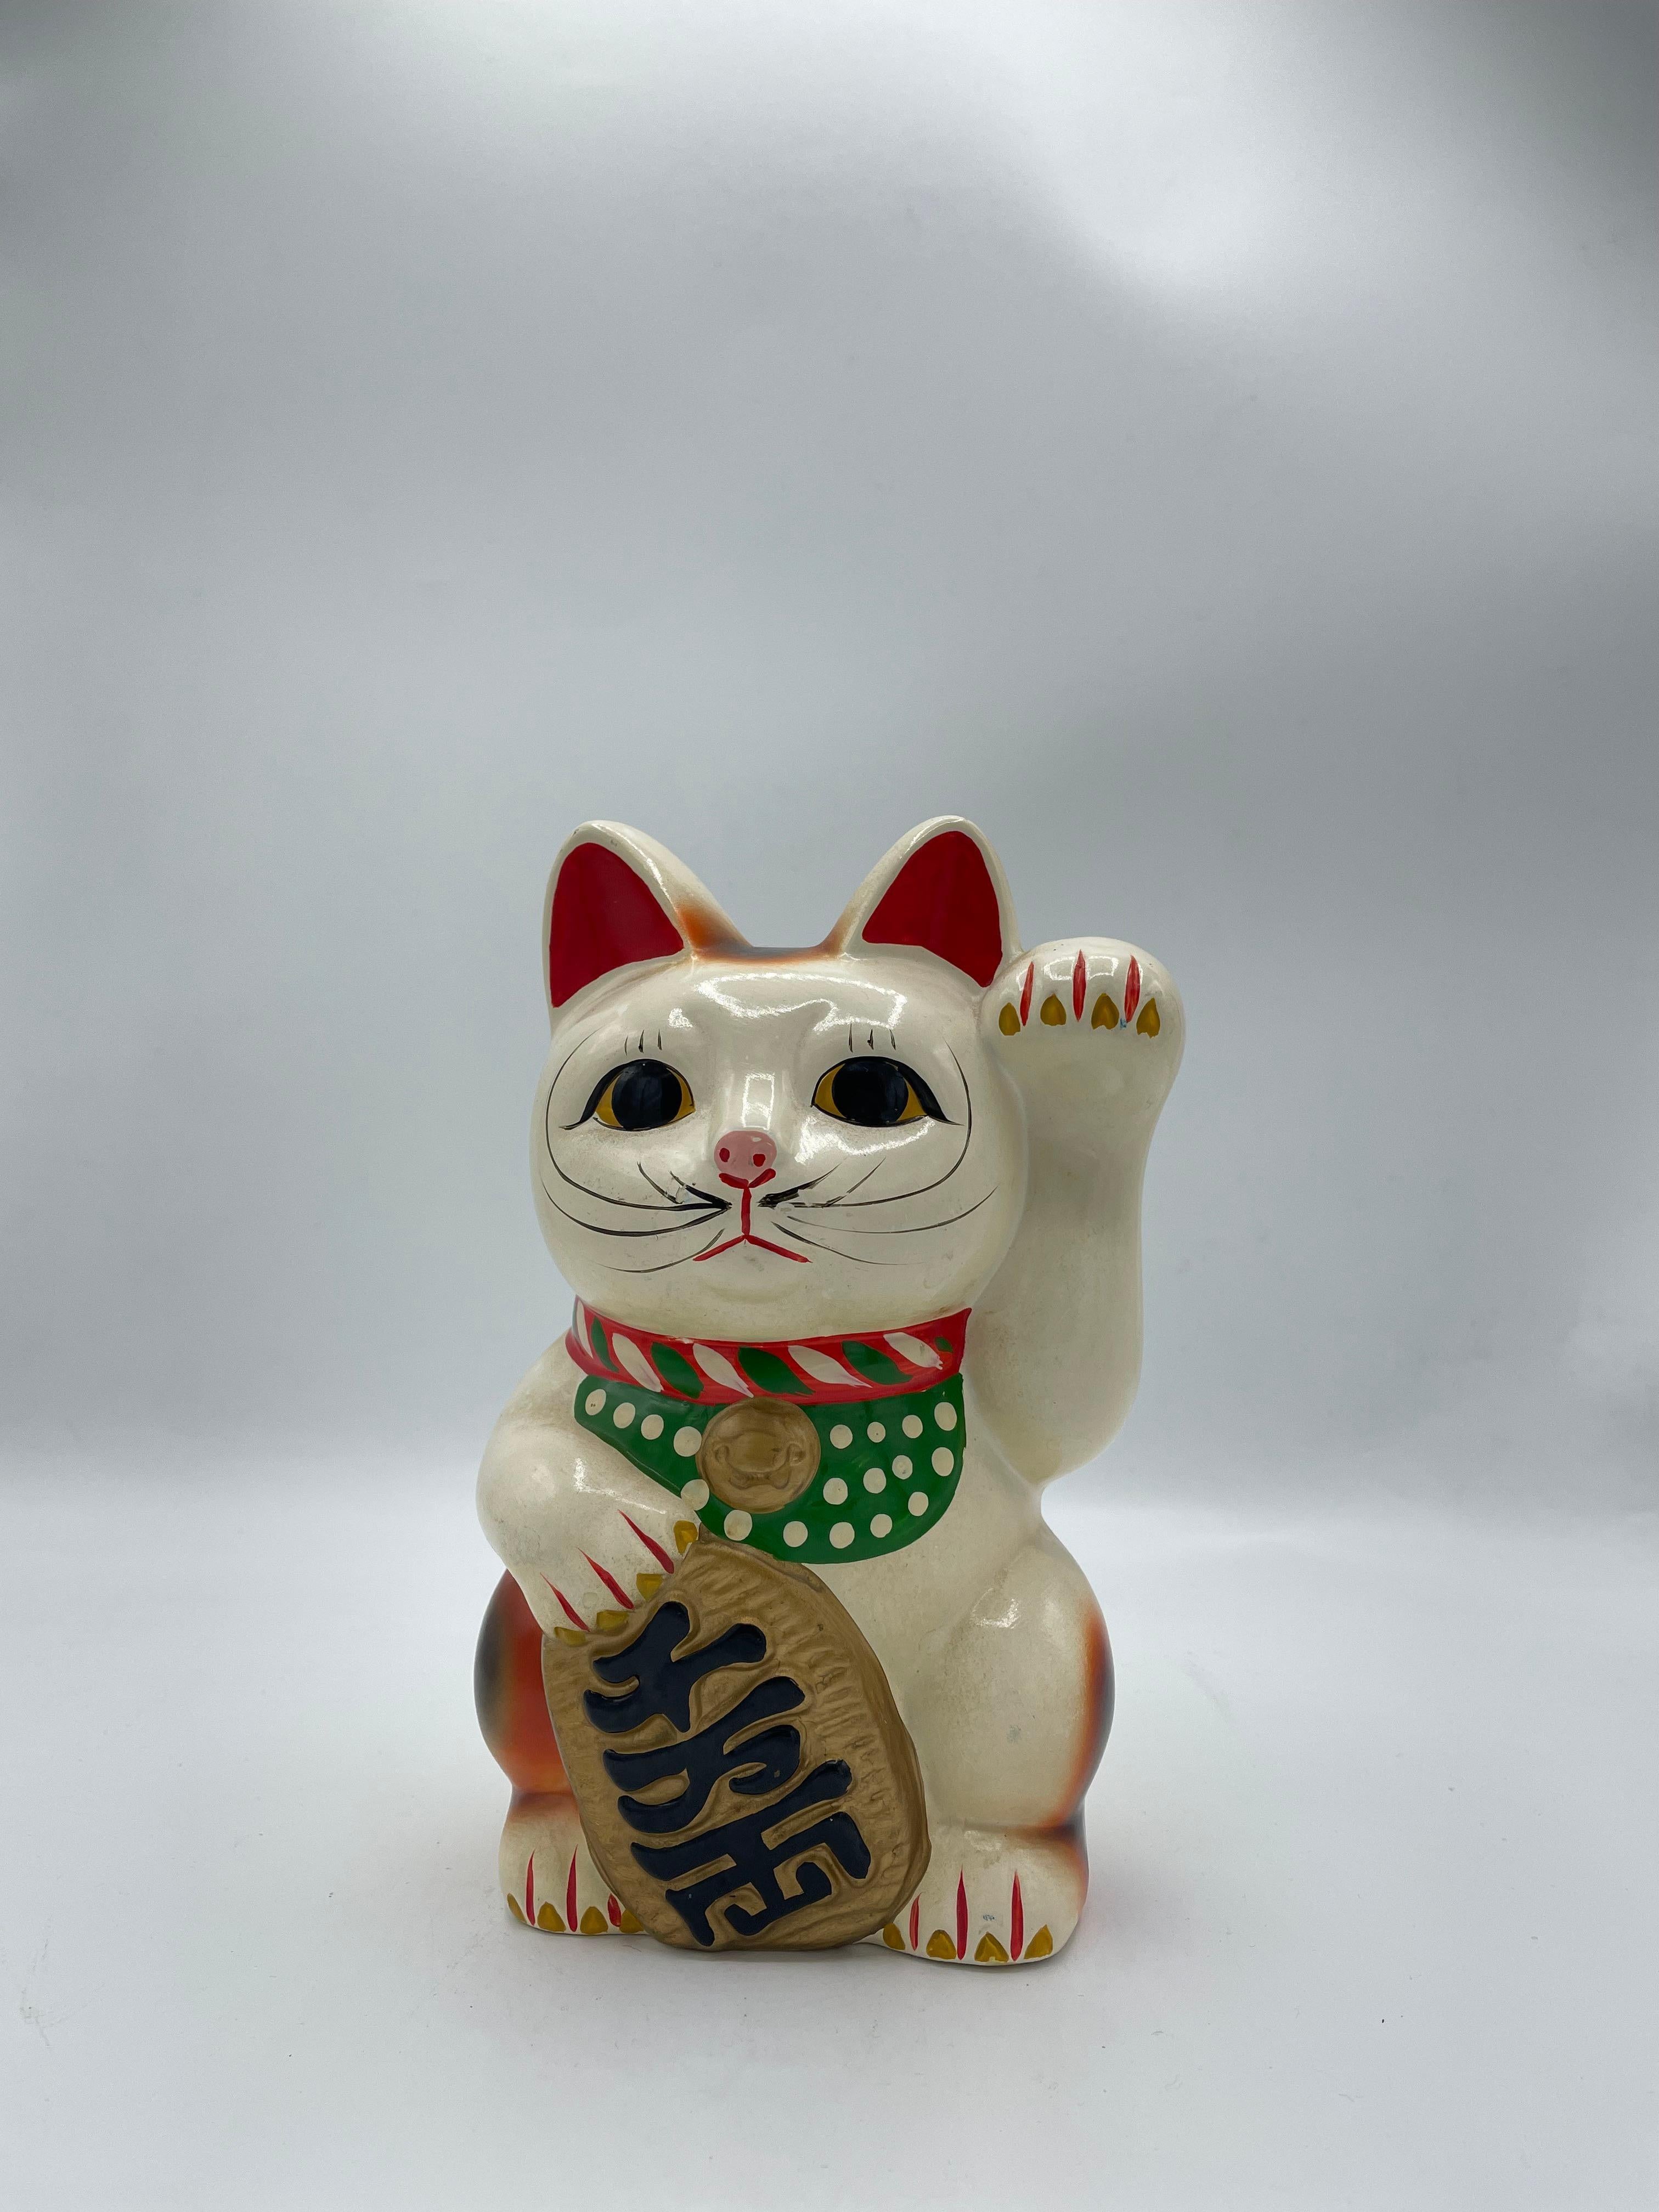 Dies ist ein Sparschwein von manekineko Katze. Es ist mit Pottery gemacht und es wurde um 1980er Jahre in Showa-Ära gemacht.

Das Maneki-Neko ist eine japanische Figur, von der man glaubt, dass sie dem Besitzer Glück bringt. Heutzutage werden sie